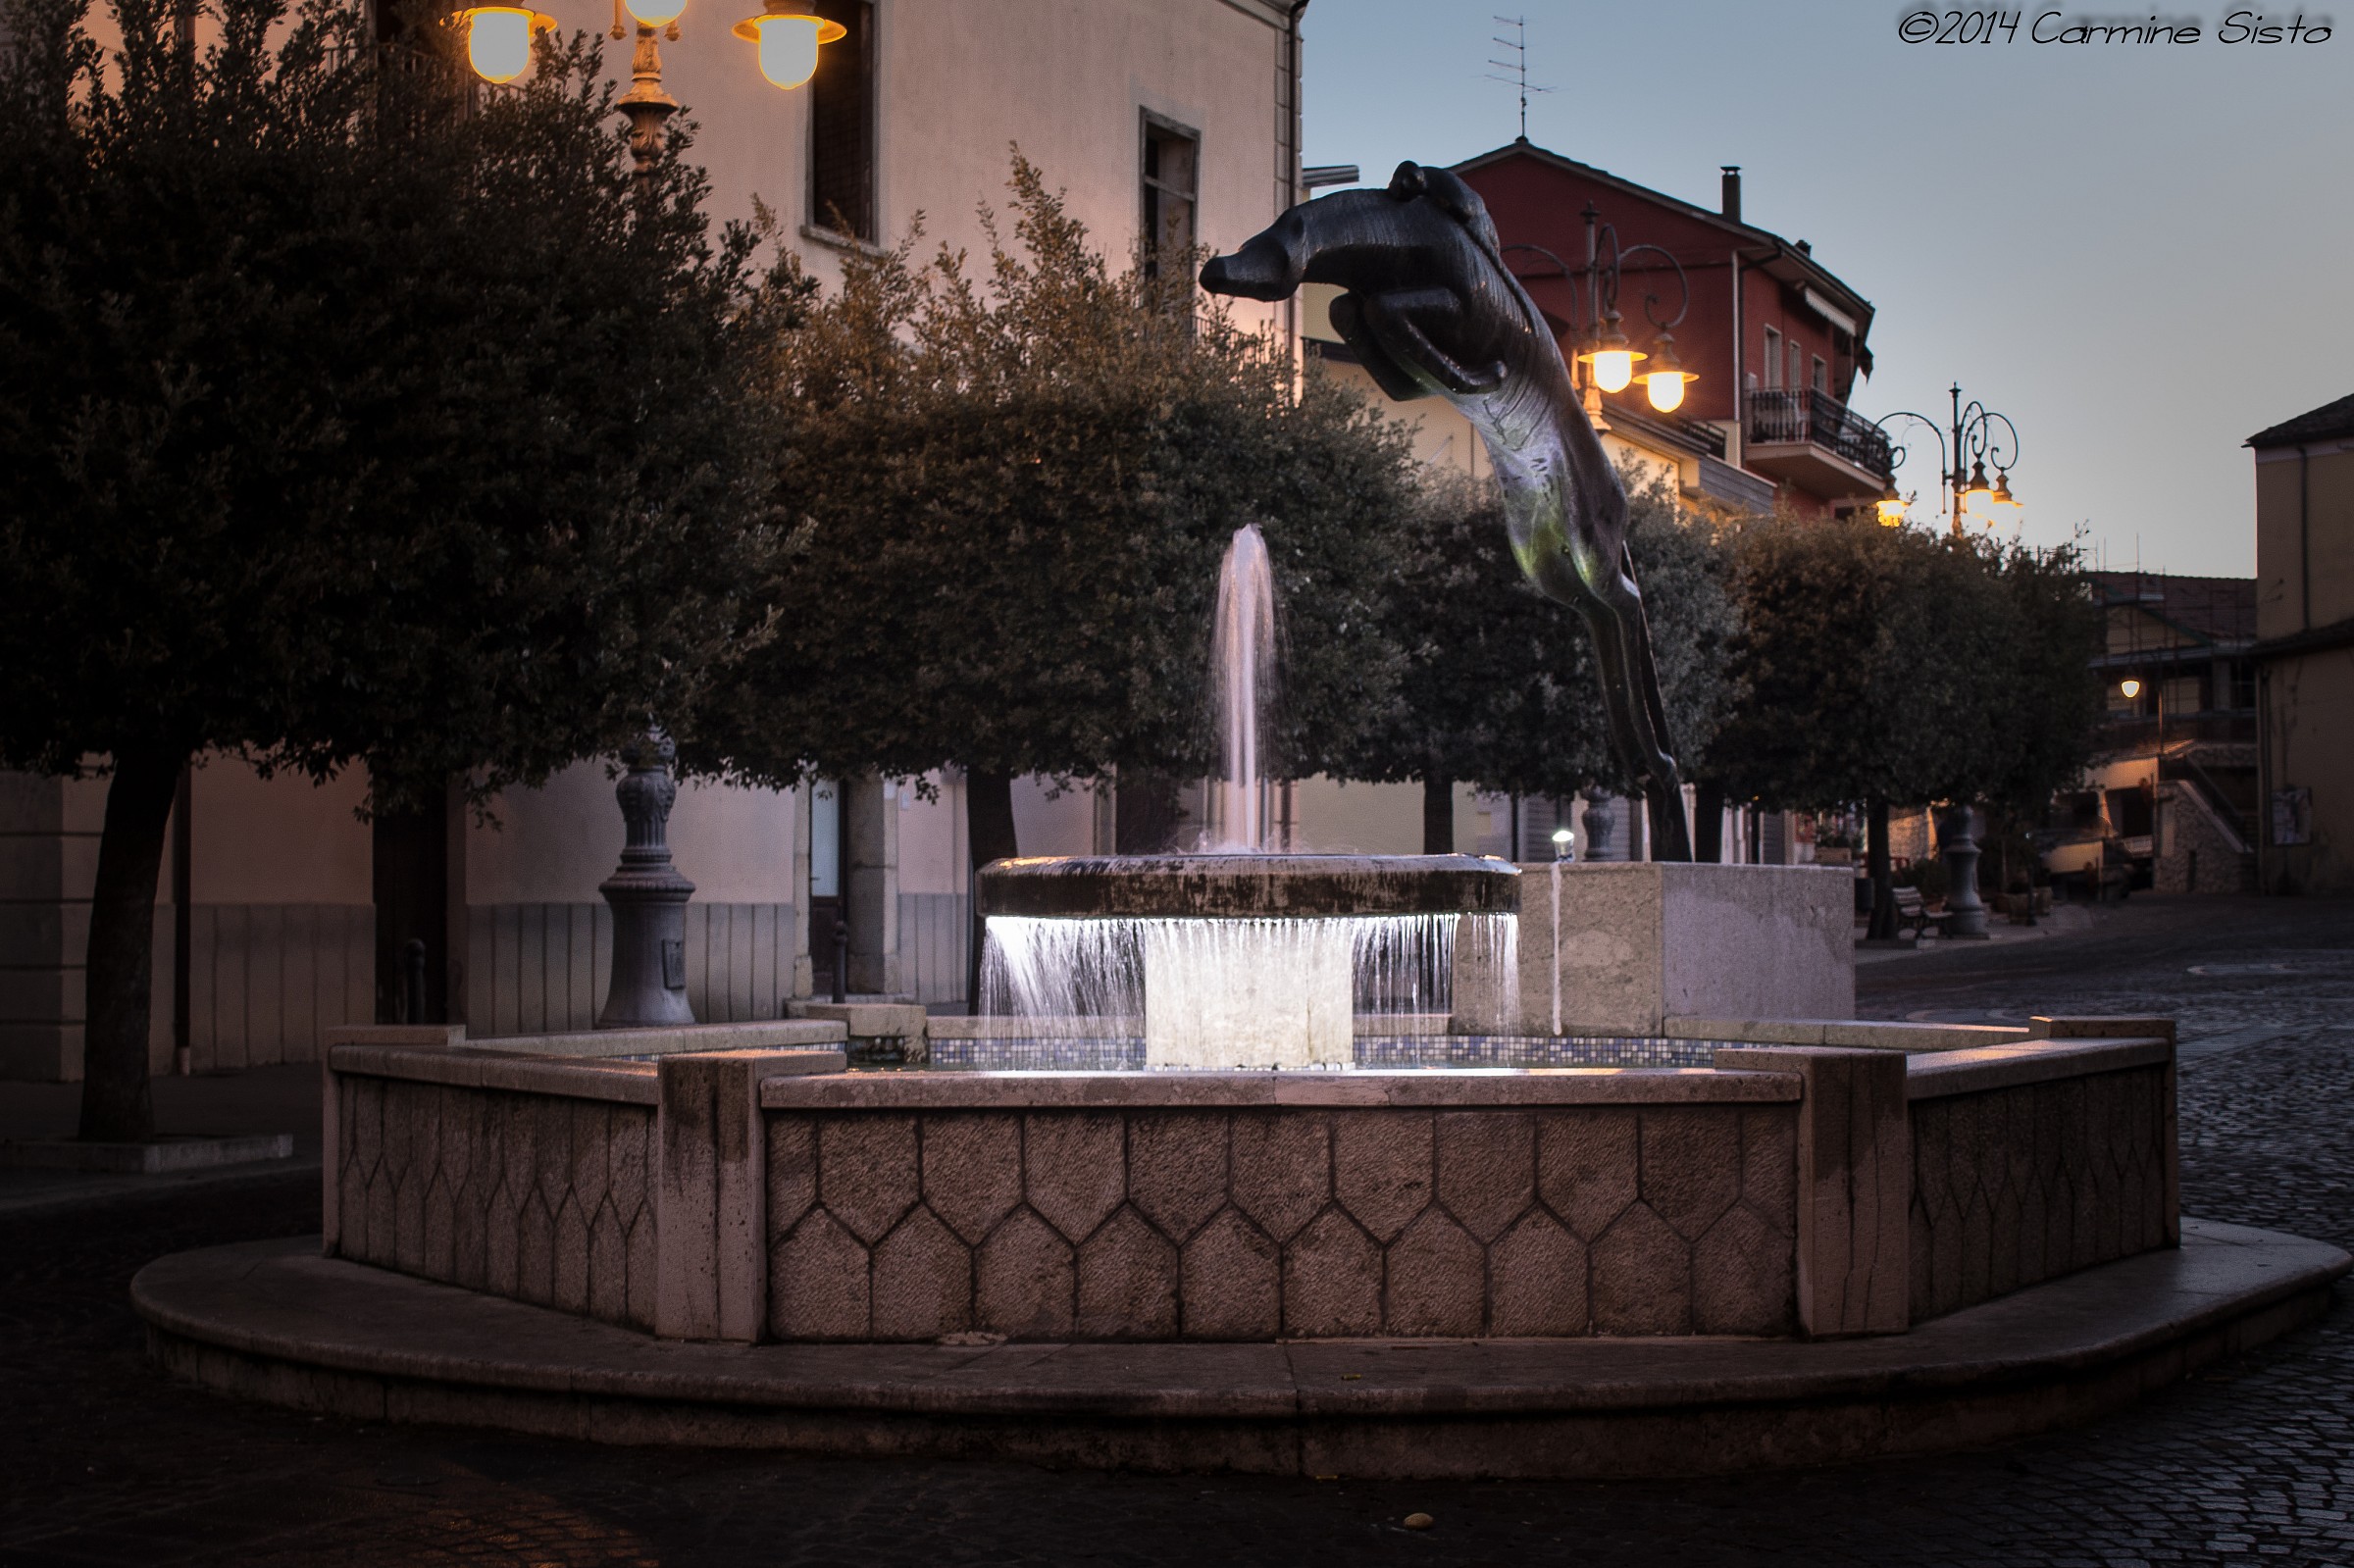 Fountain with jockey Castel barony...